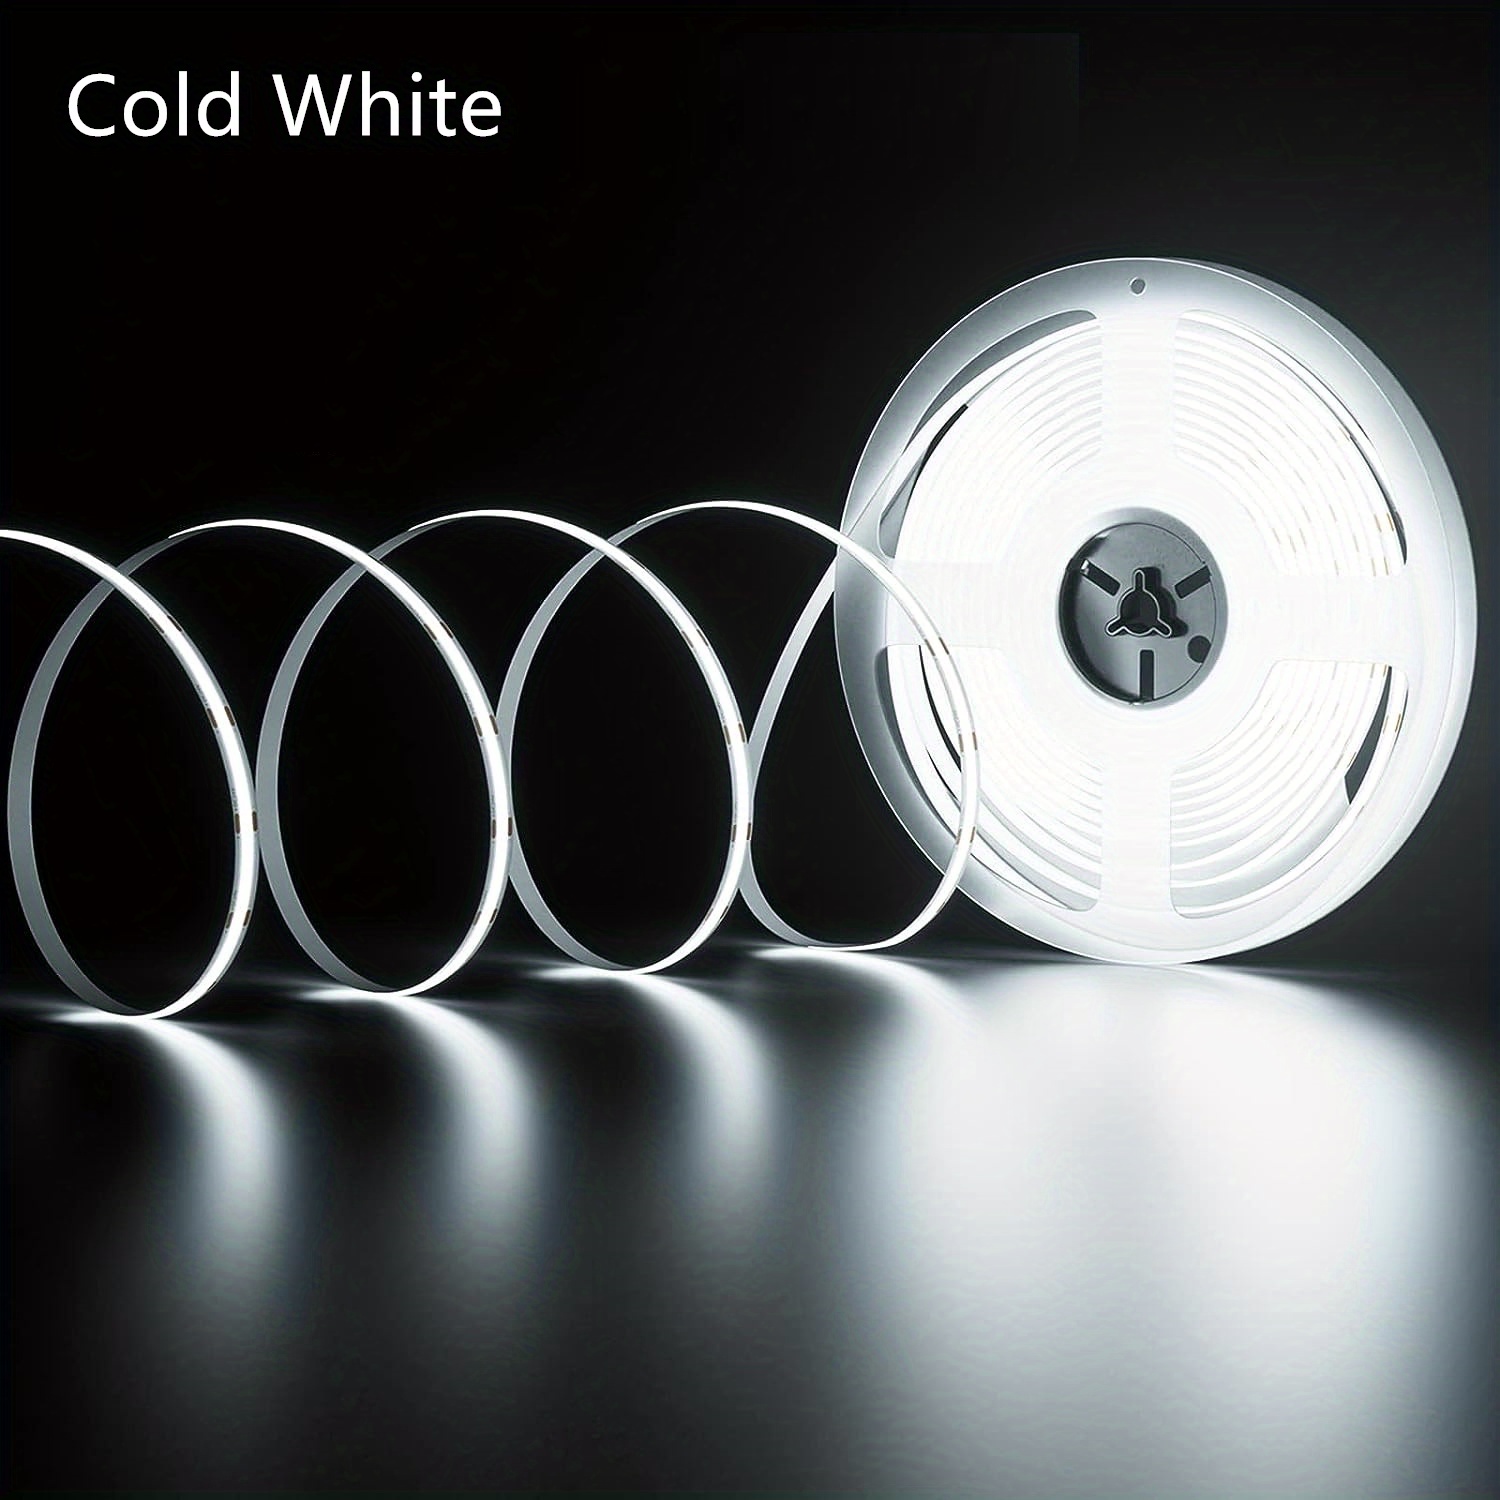 12V Cold White LED Strip (1m)